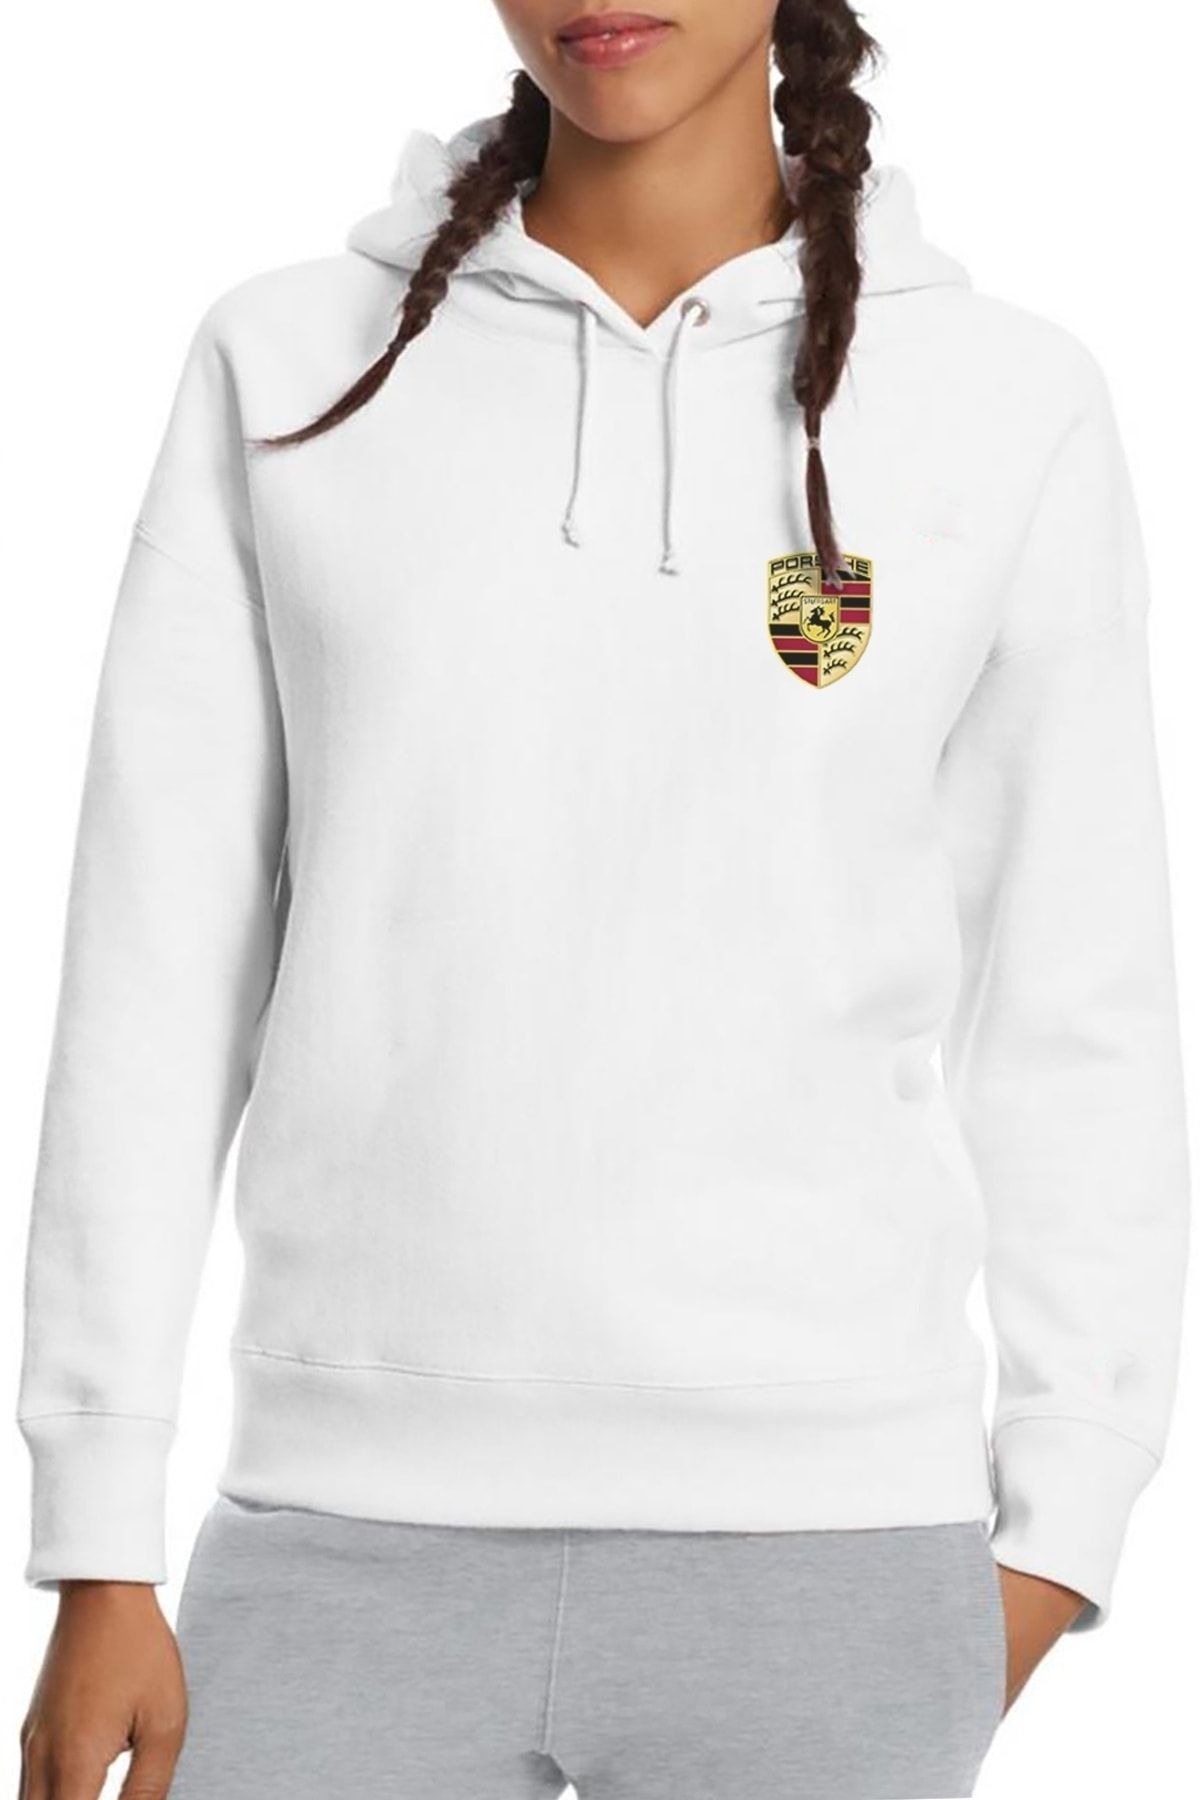 QIVI Porsche Logo Baskılı Beyaz Kadın Örme Kapşonlu Sweatshirt Uzun Kol